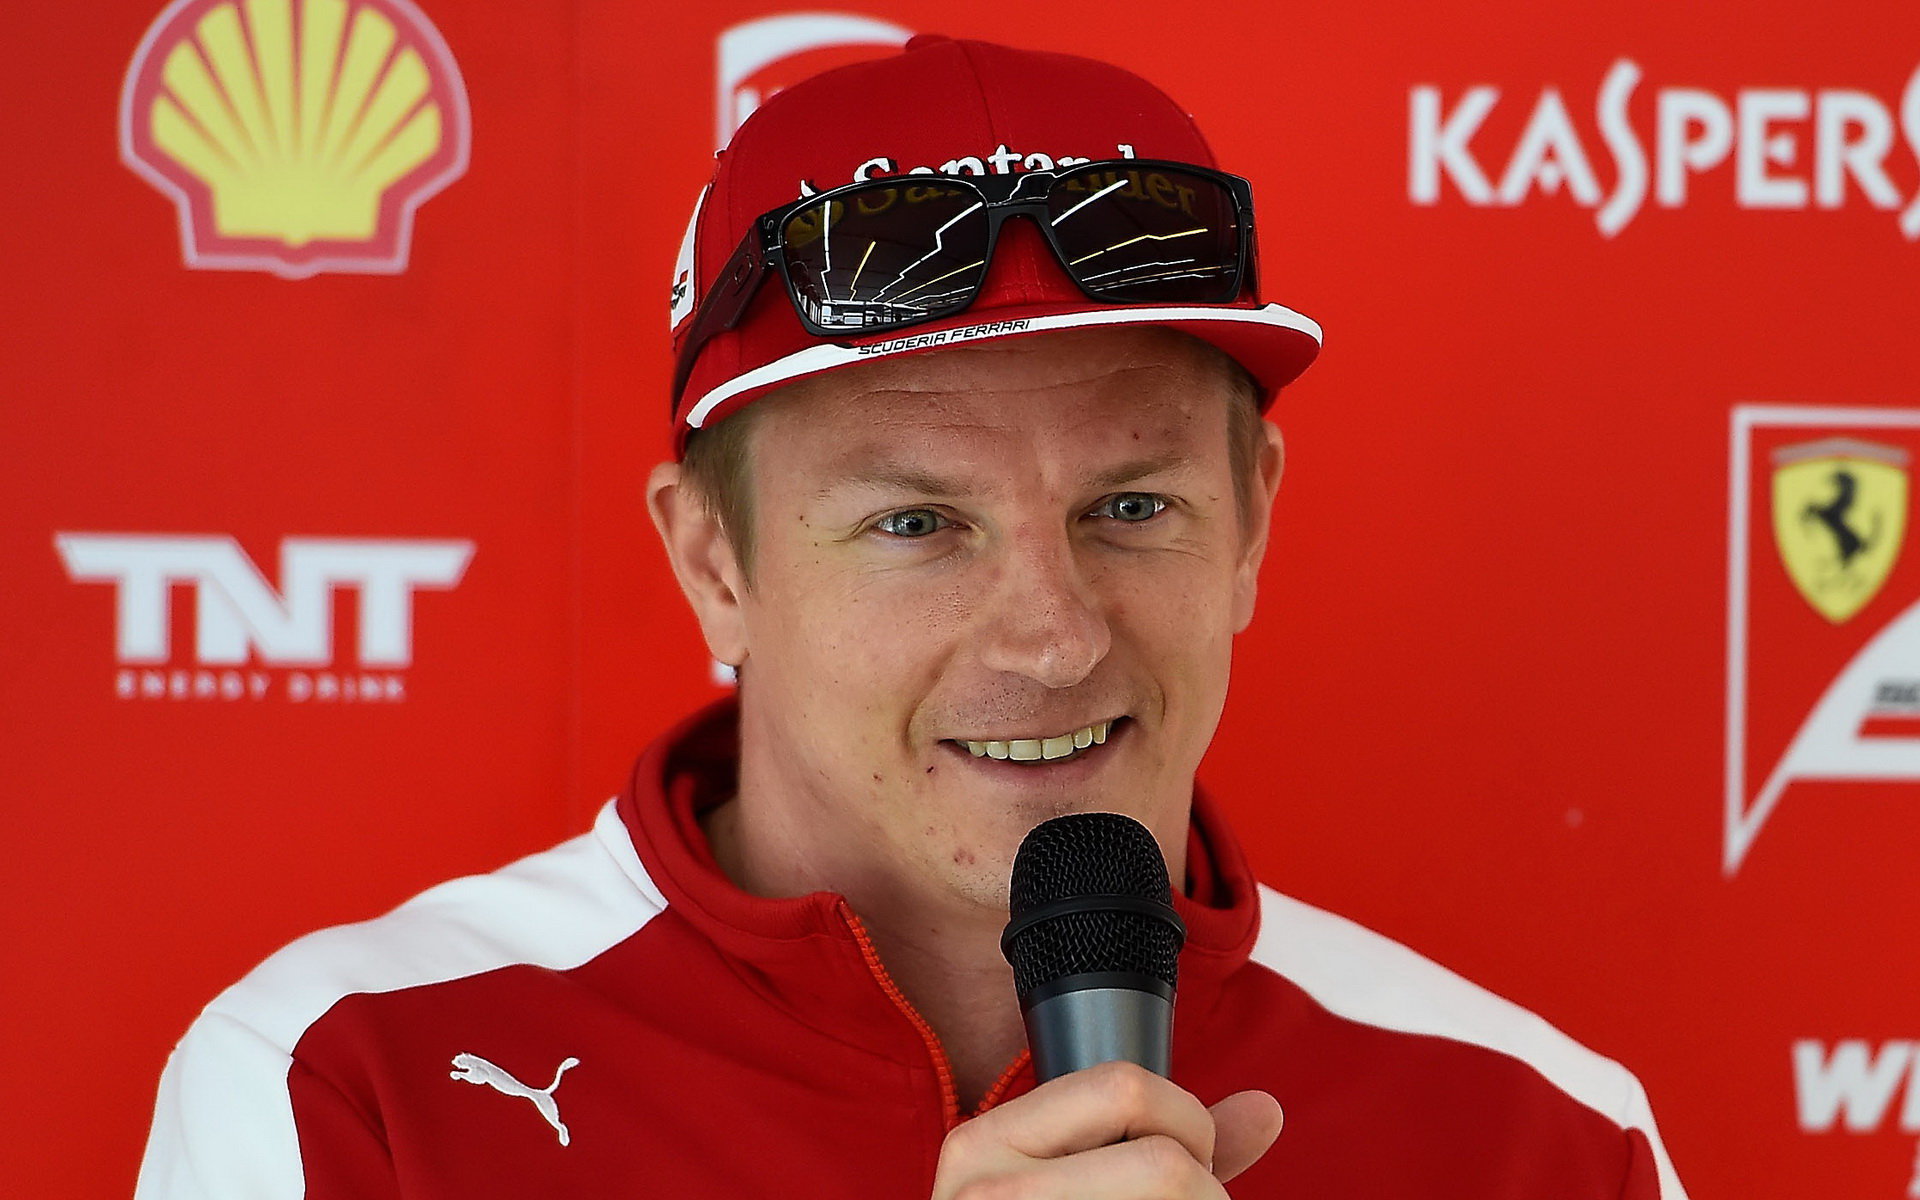 Räikkönena spekulace kolem jeho osoby nepřekvapují, jen ho začínají unavovat.